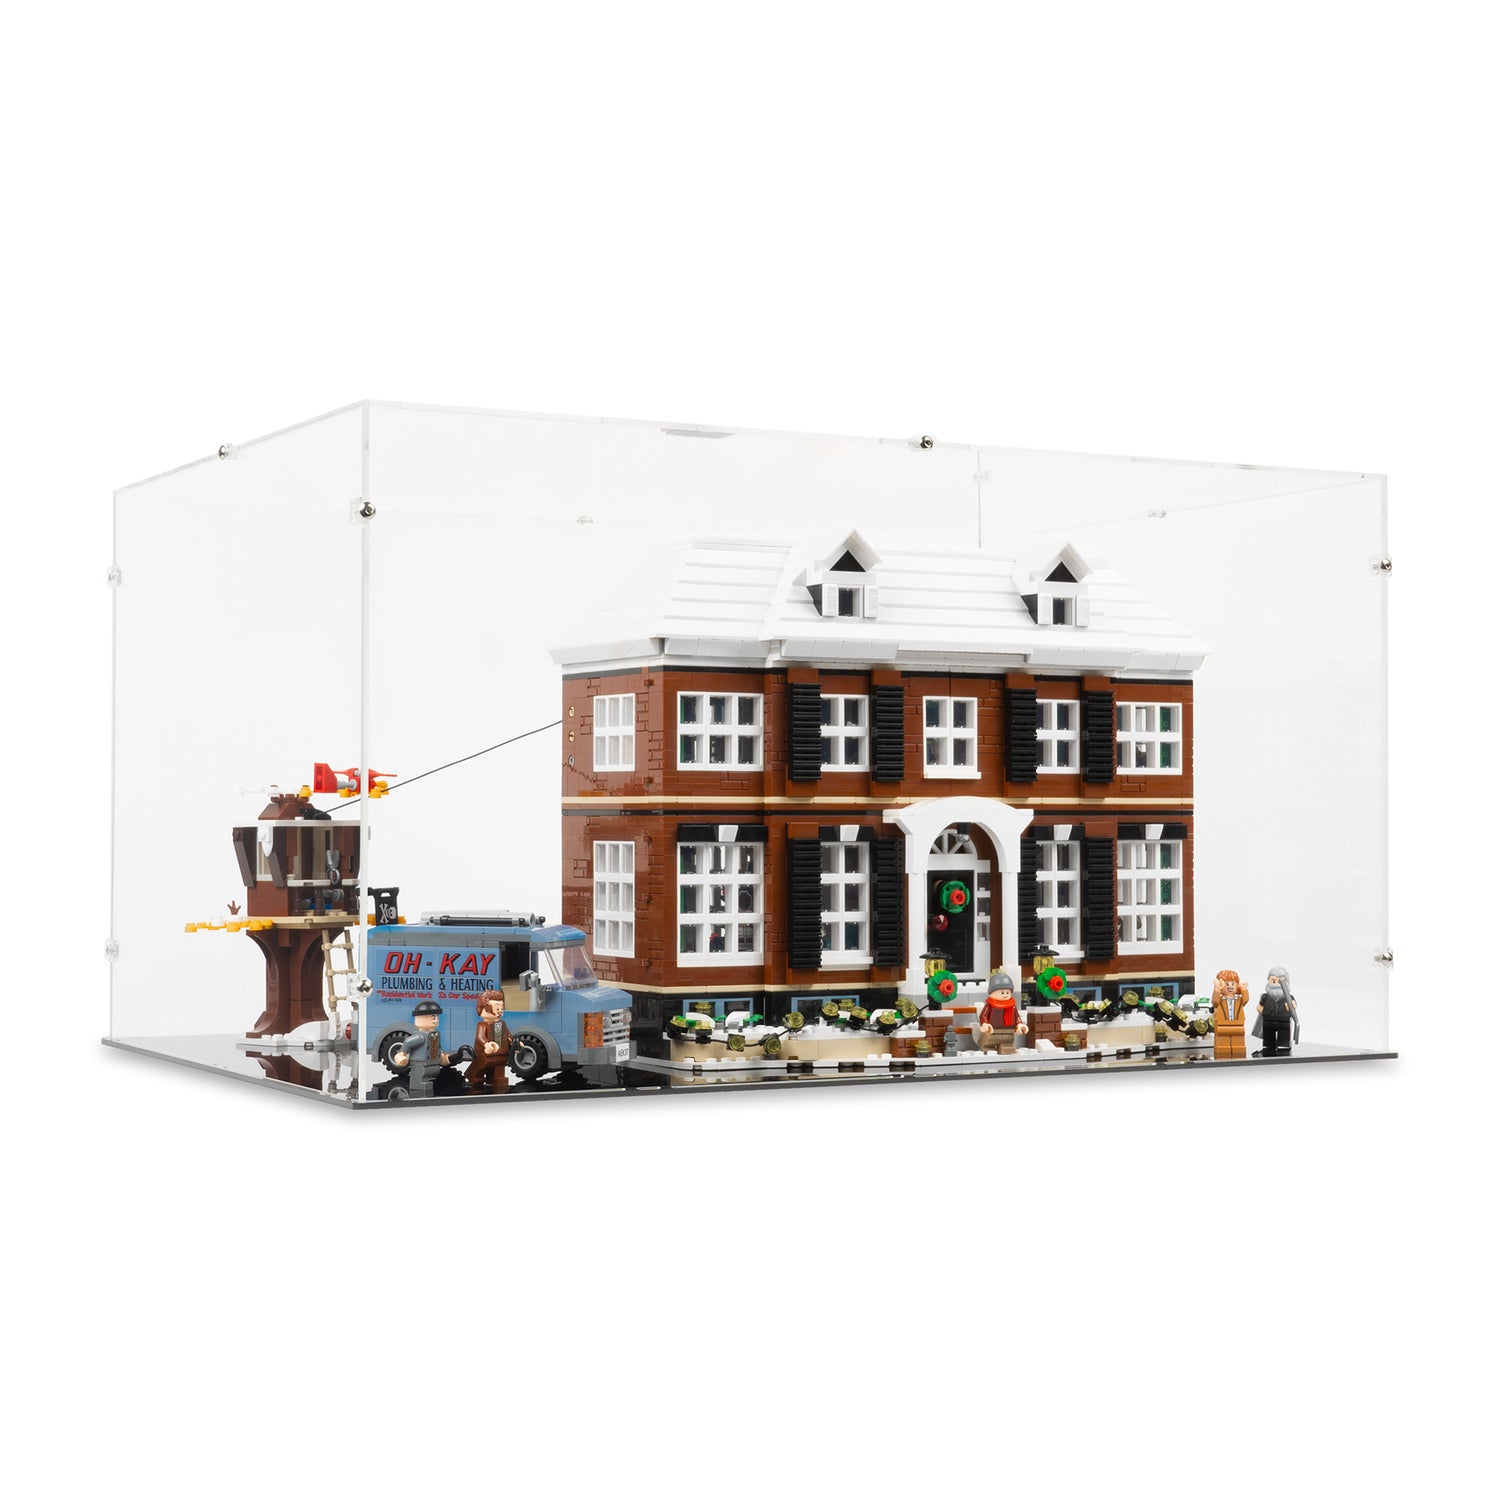 LEGO® Yoda™ Display Case (75255) – Kingdom Brick Supply